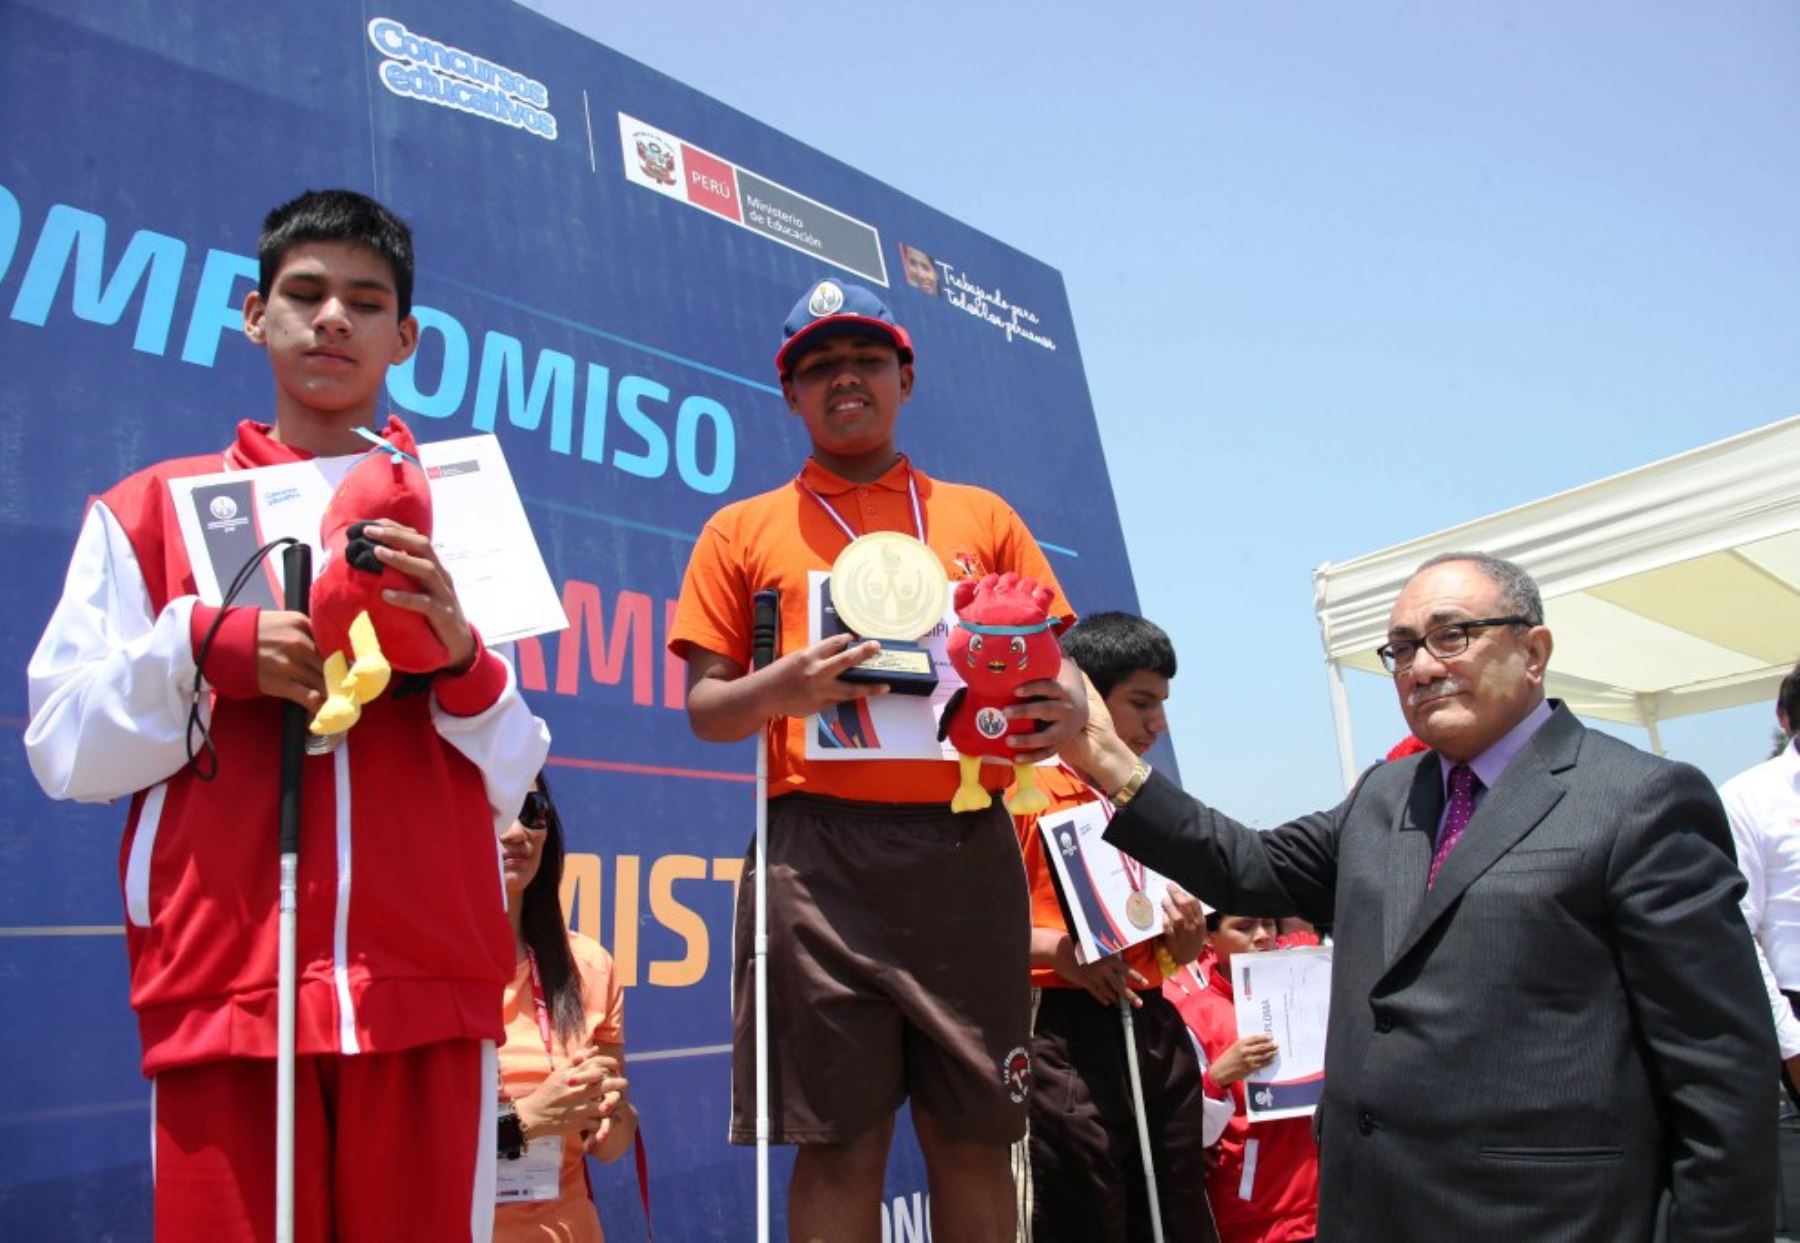 Ministro de Educación premia a atletas escolares con discapacidad visual. Foto: ANDINA/Difusión.